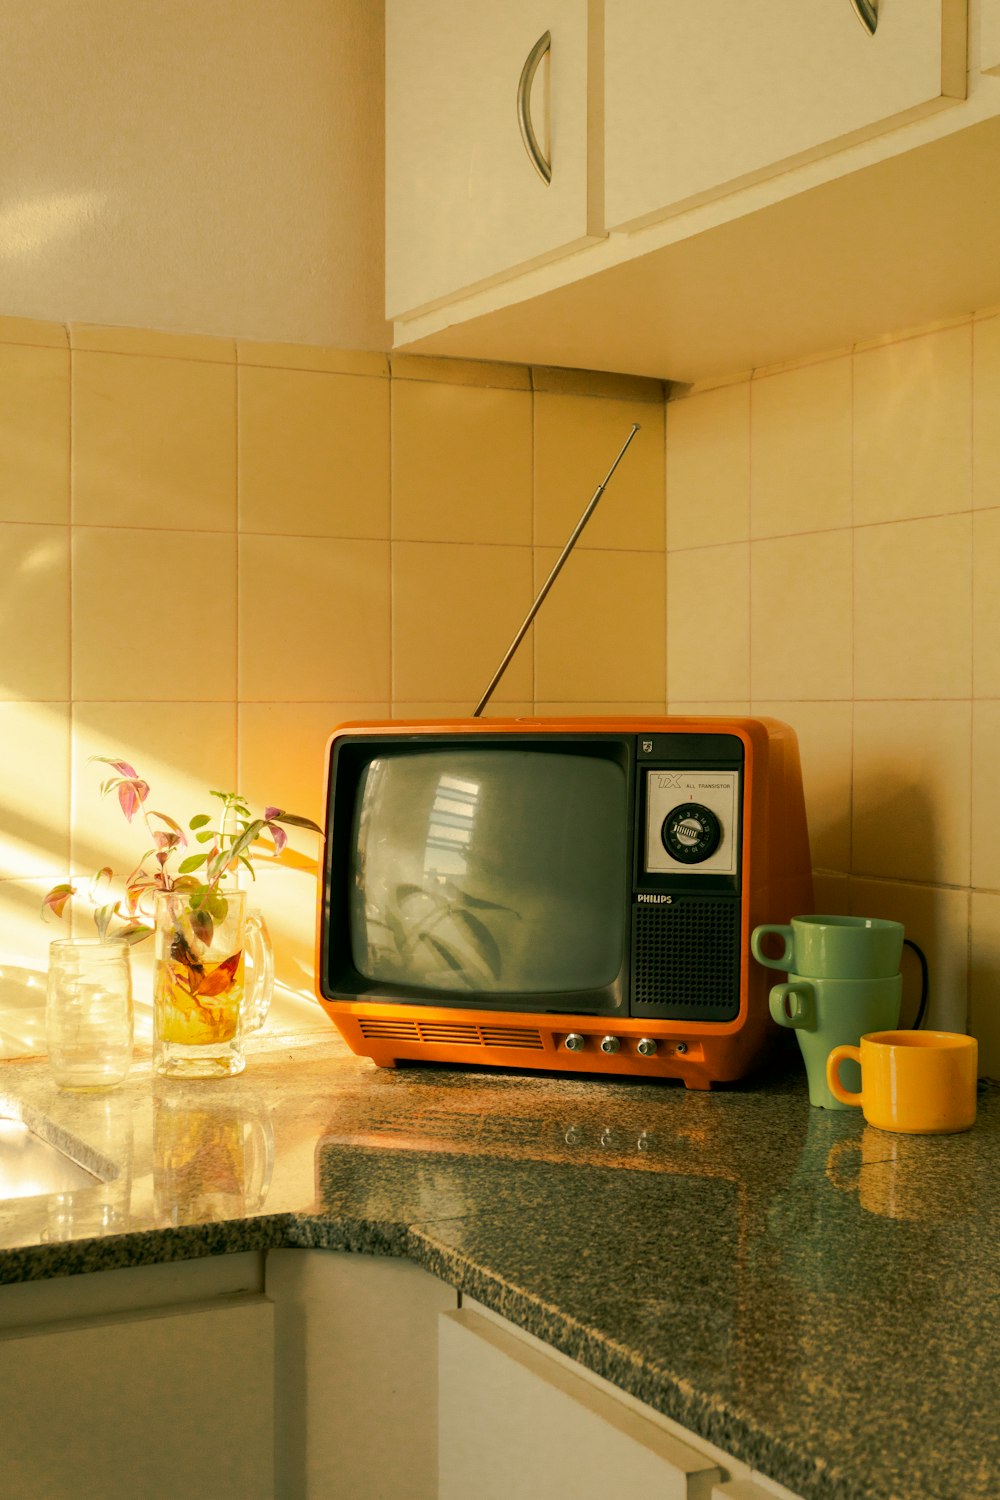 televisión crt marrón sobre una mesa de madera marrón